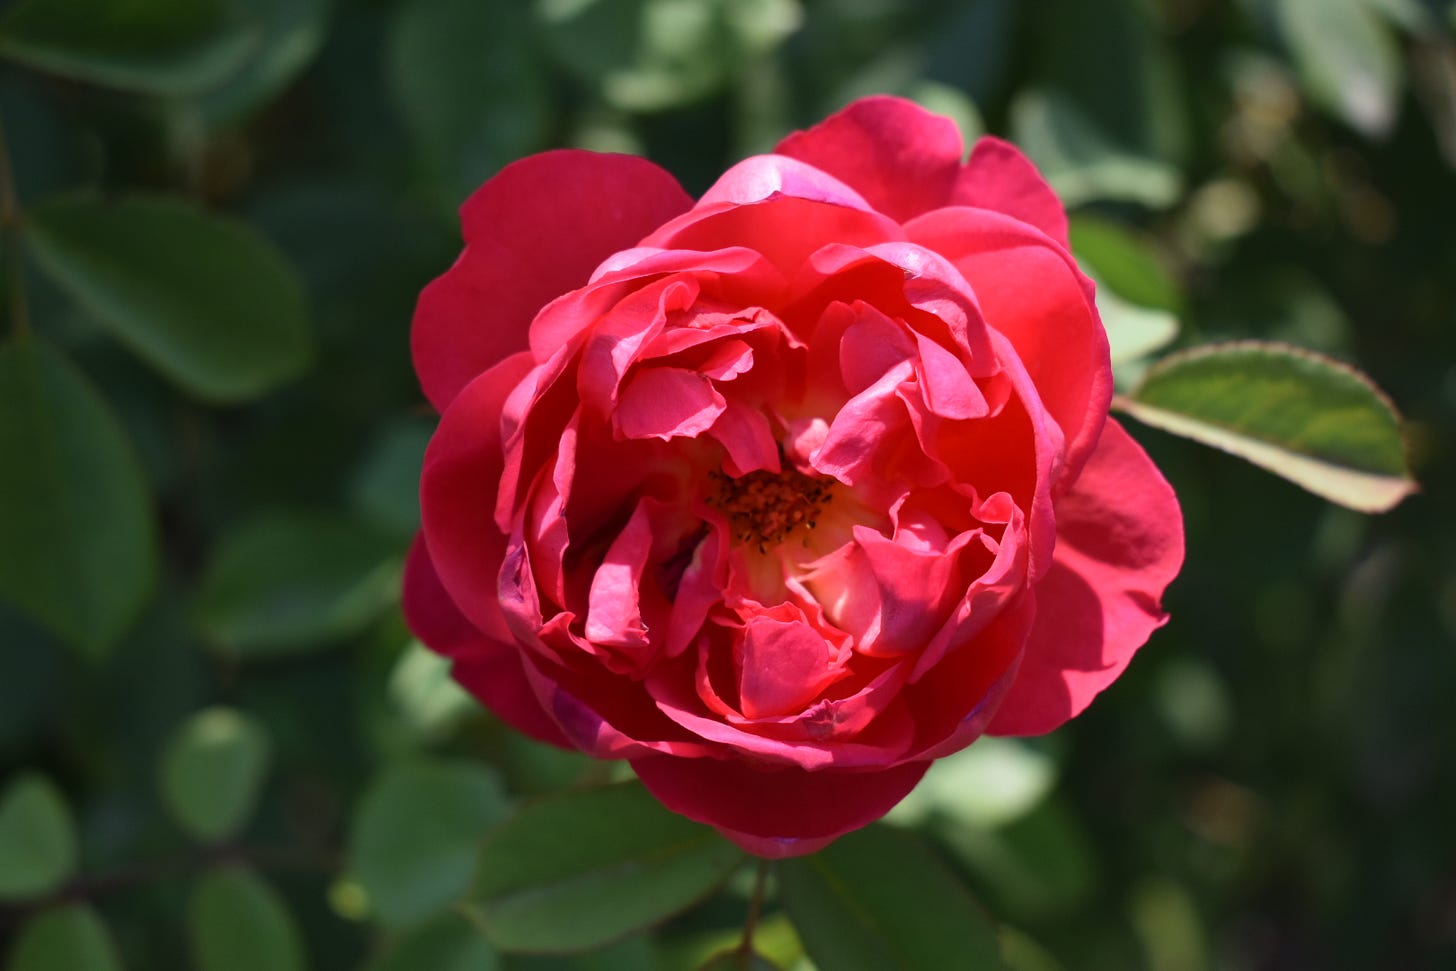 A magenta pink rose, close-up